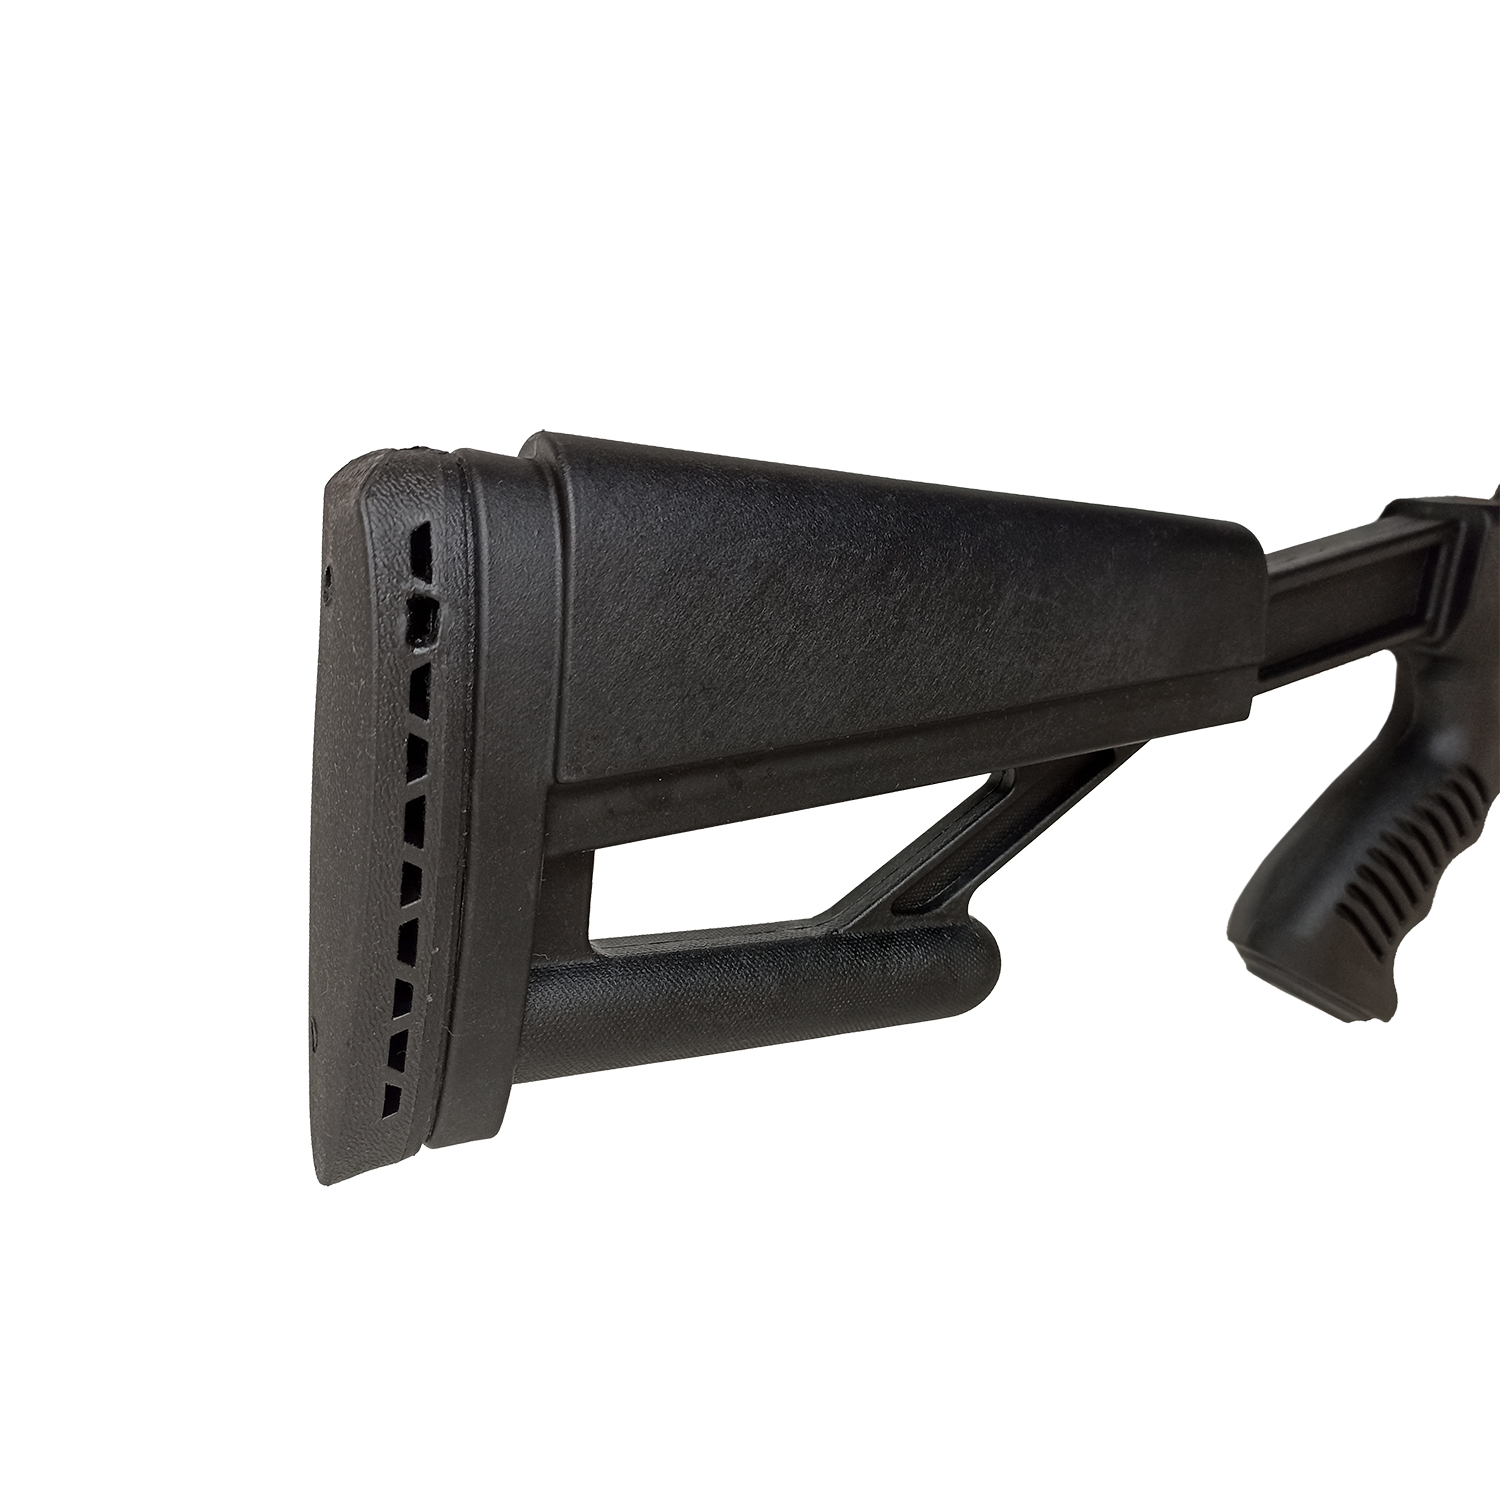 Пневматическая винтовка Hatsan AIRTACT калибр 4.5 мм 3 Дж